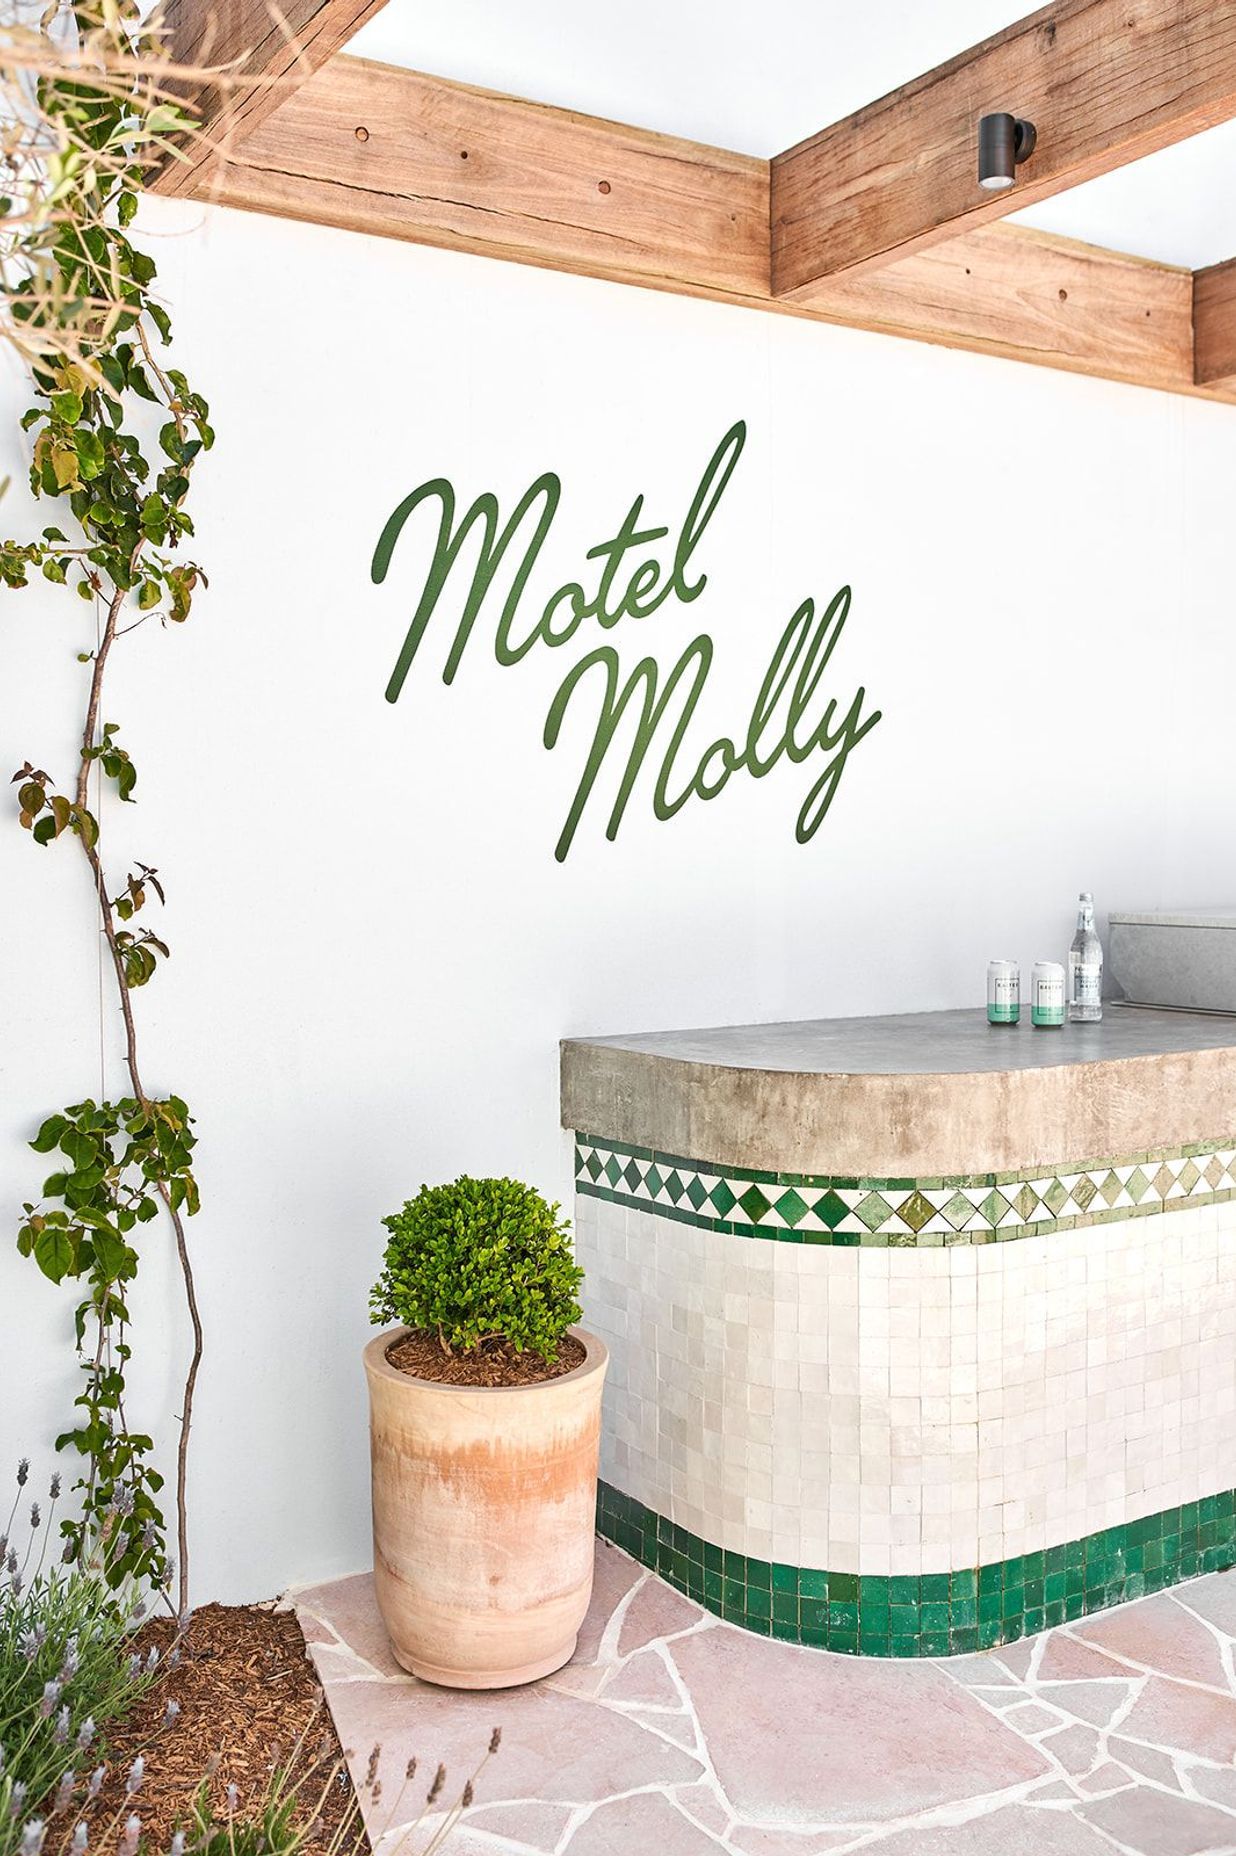 Motel Molly